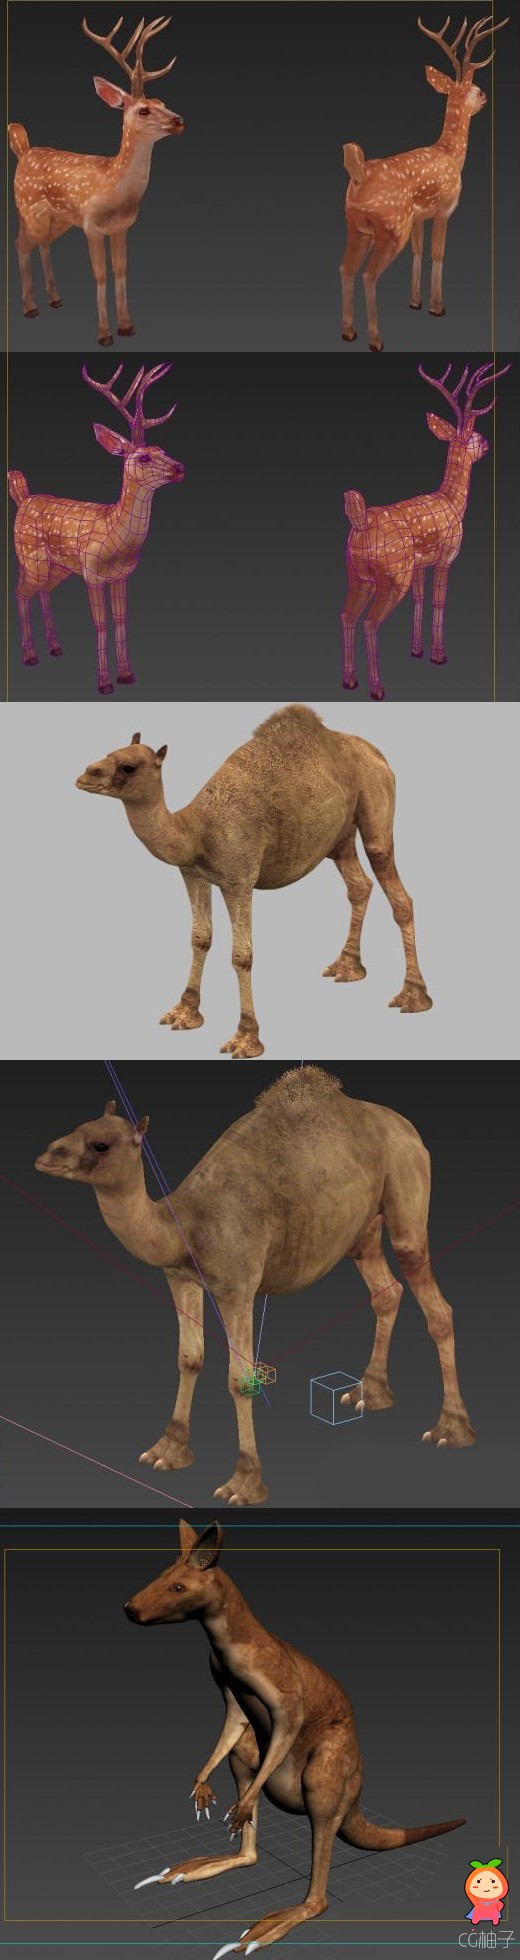 哺乳类动物3D模型下载 袋鼠 梅花鹿 骆驼3d角色模型 有材质